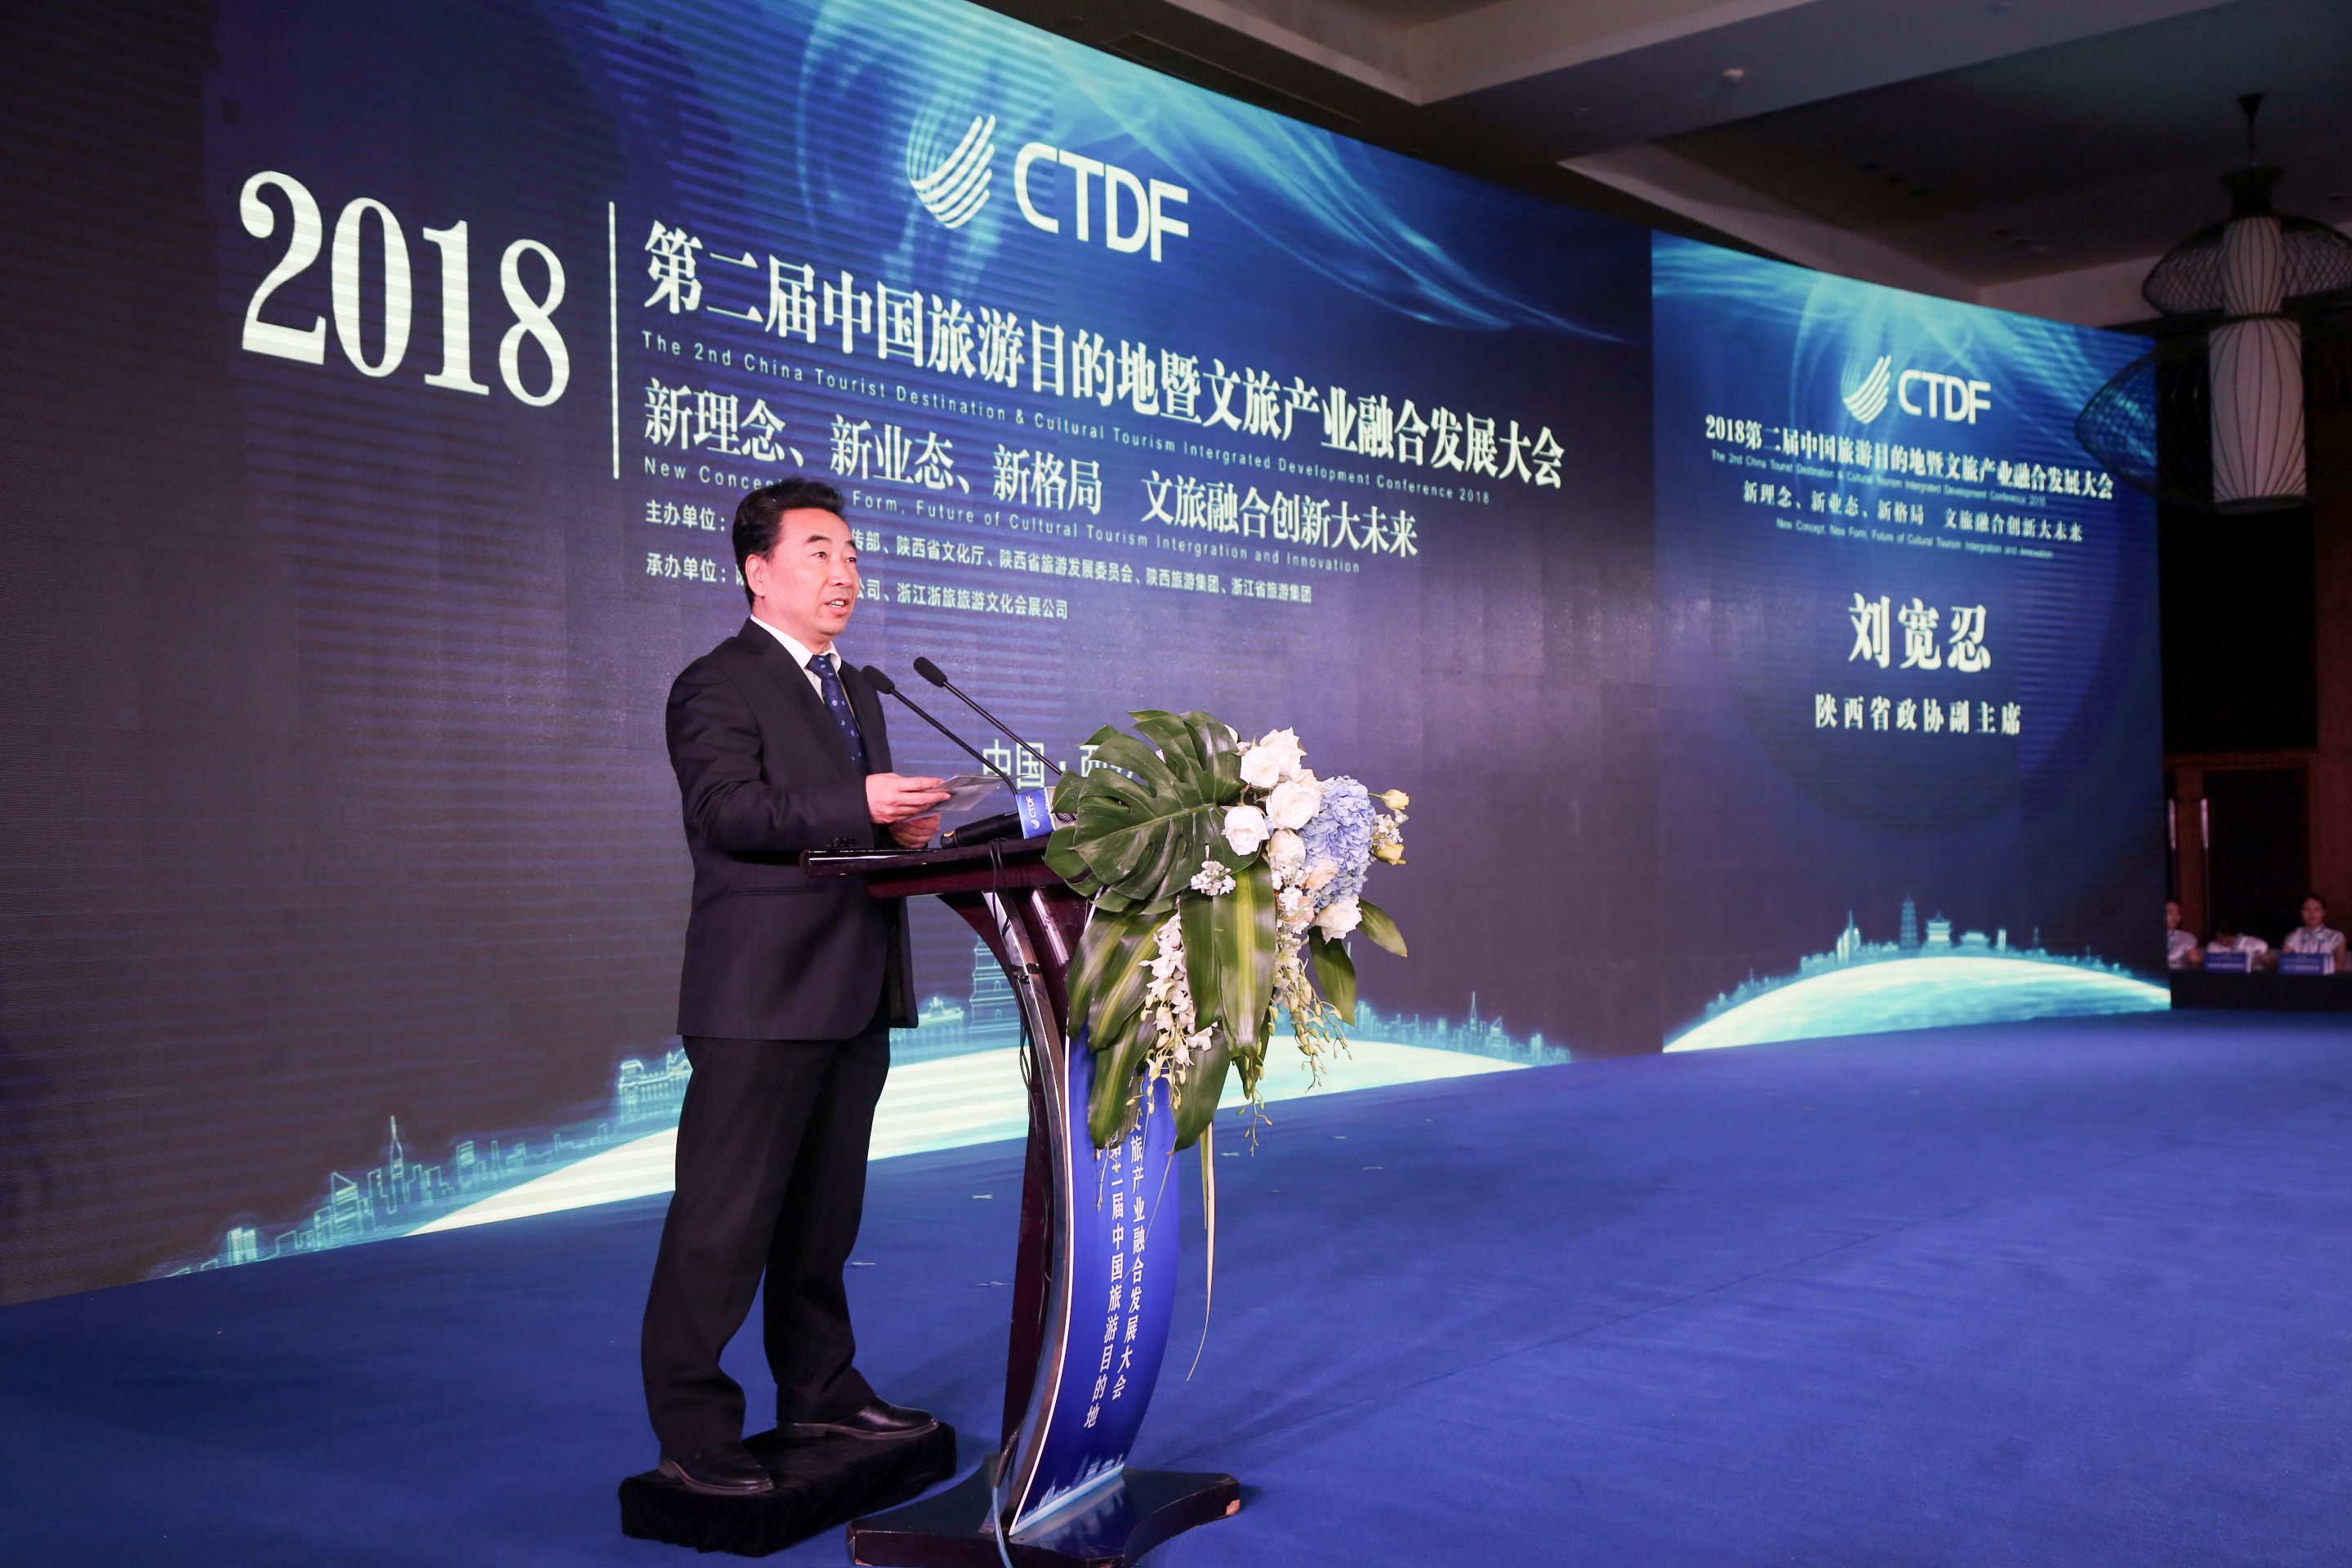 2018中国旅游目的地暨文旅产业融合发展大会在西安盛大开幕